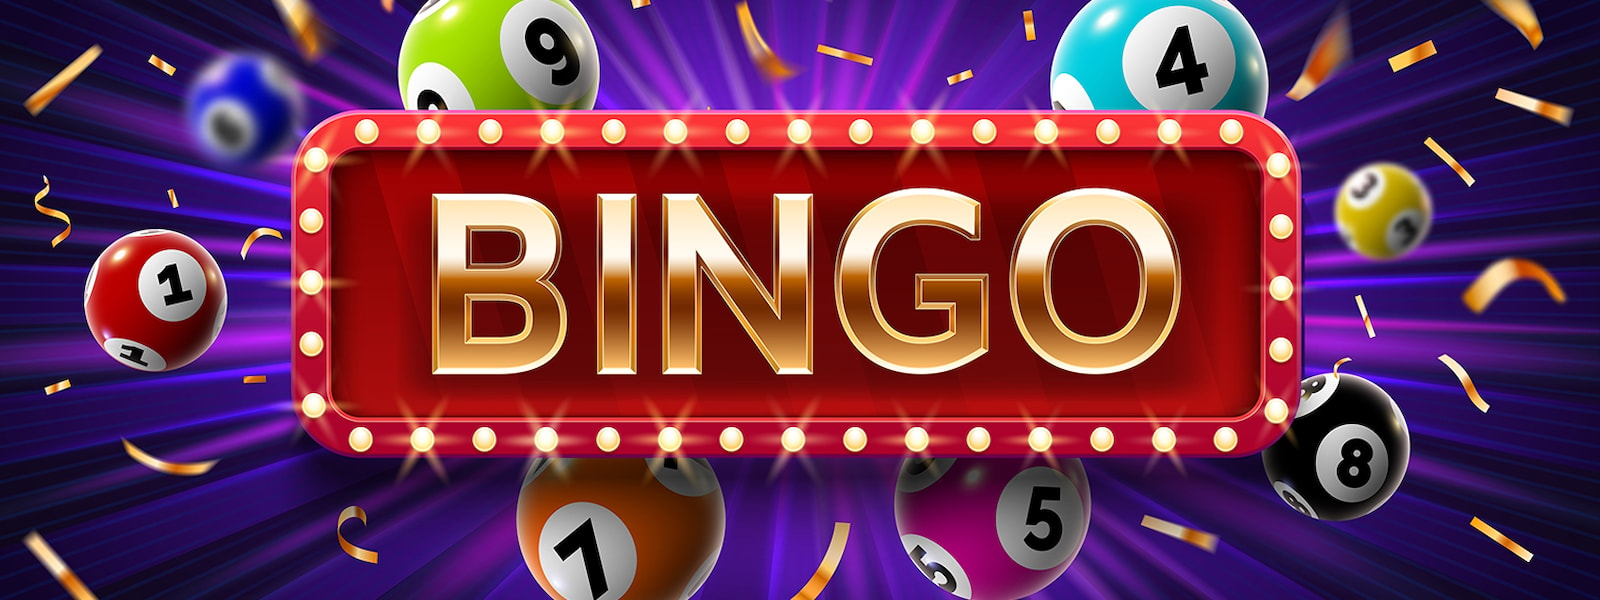 Bingo sign with bingo balls